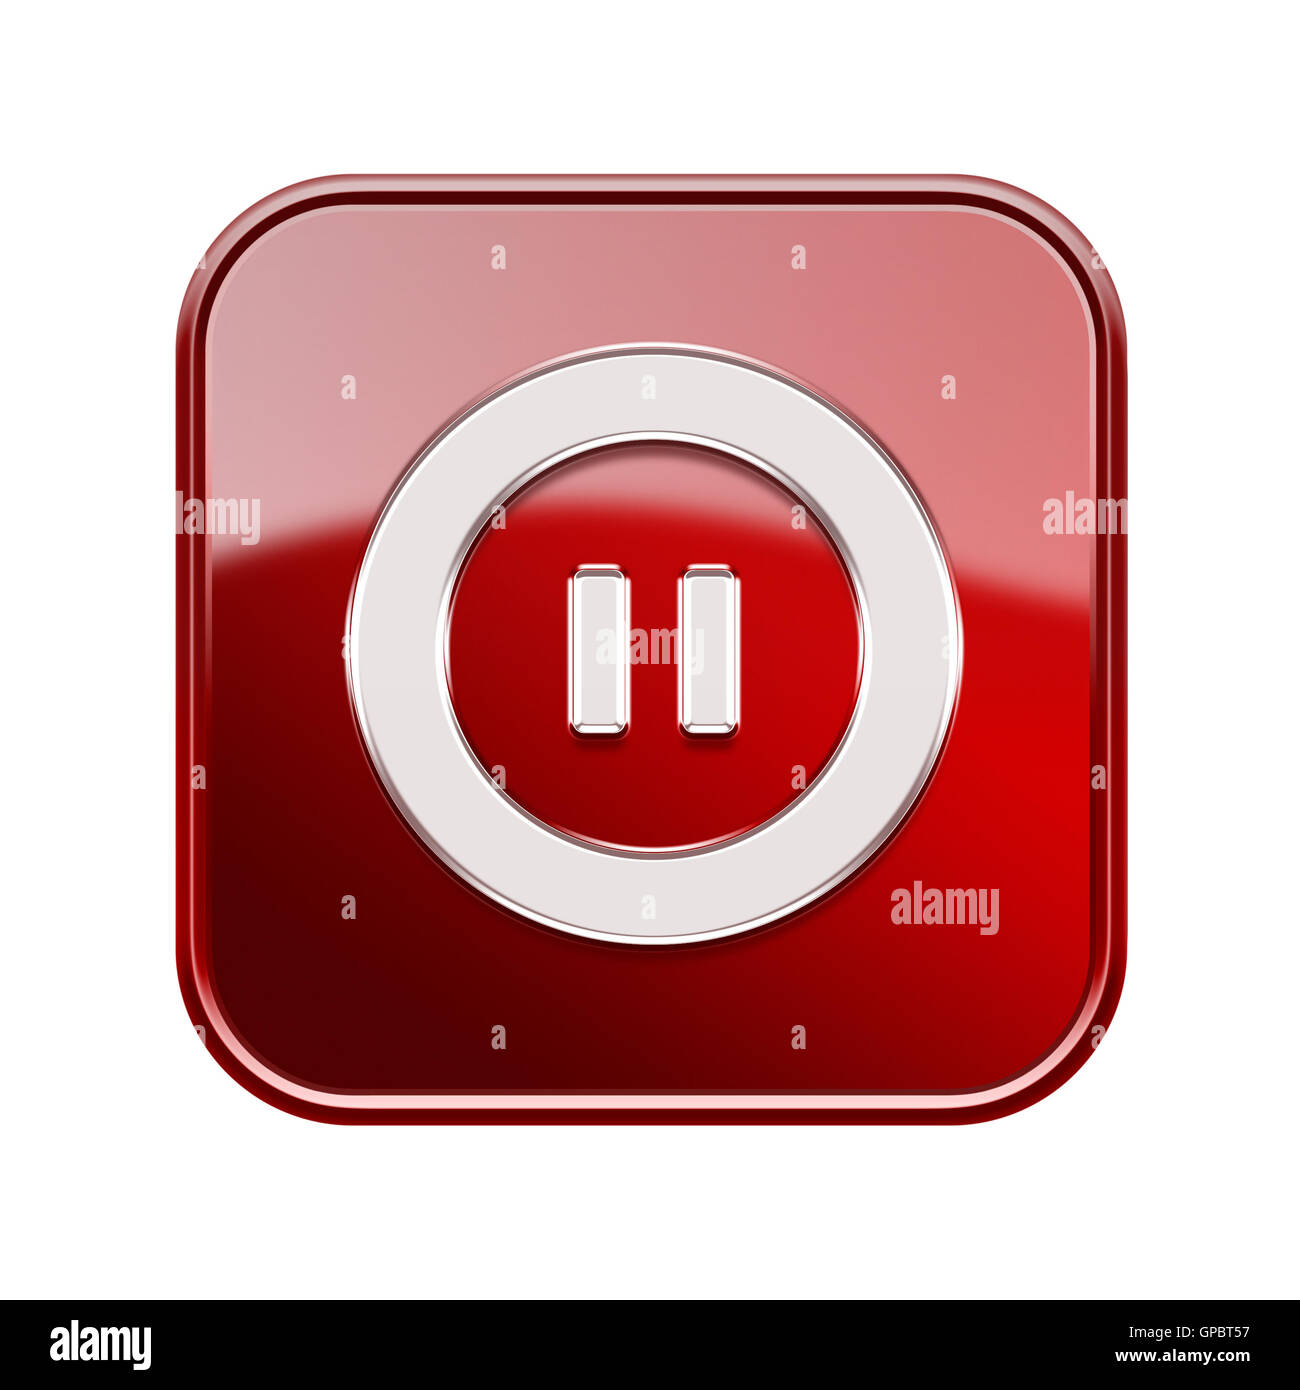 L'icône Pause rouge brillant, isolé sur fond blanc Banque D'Images